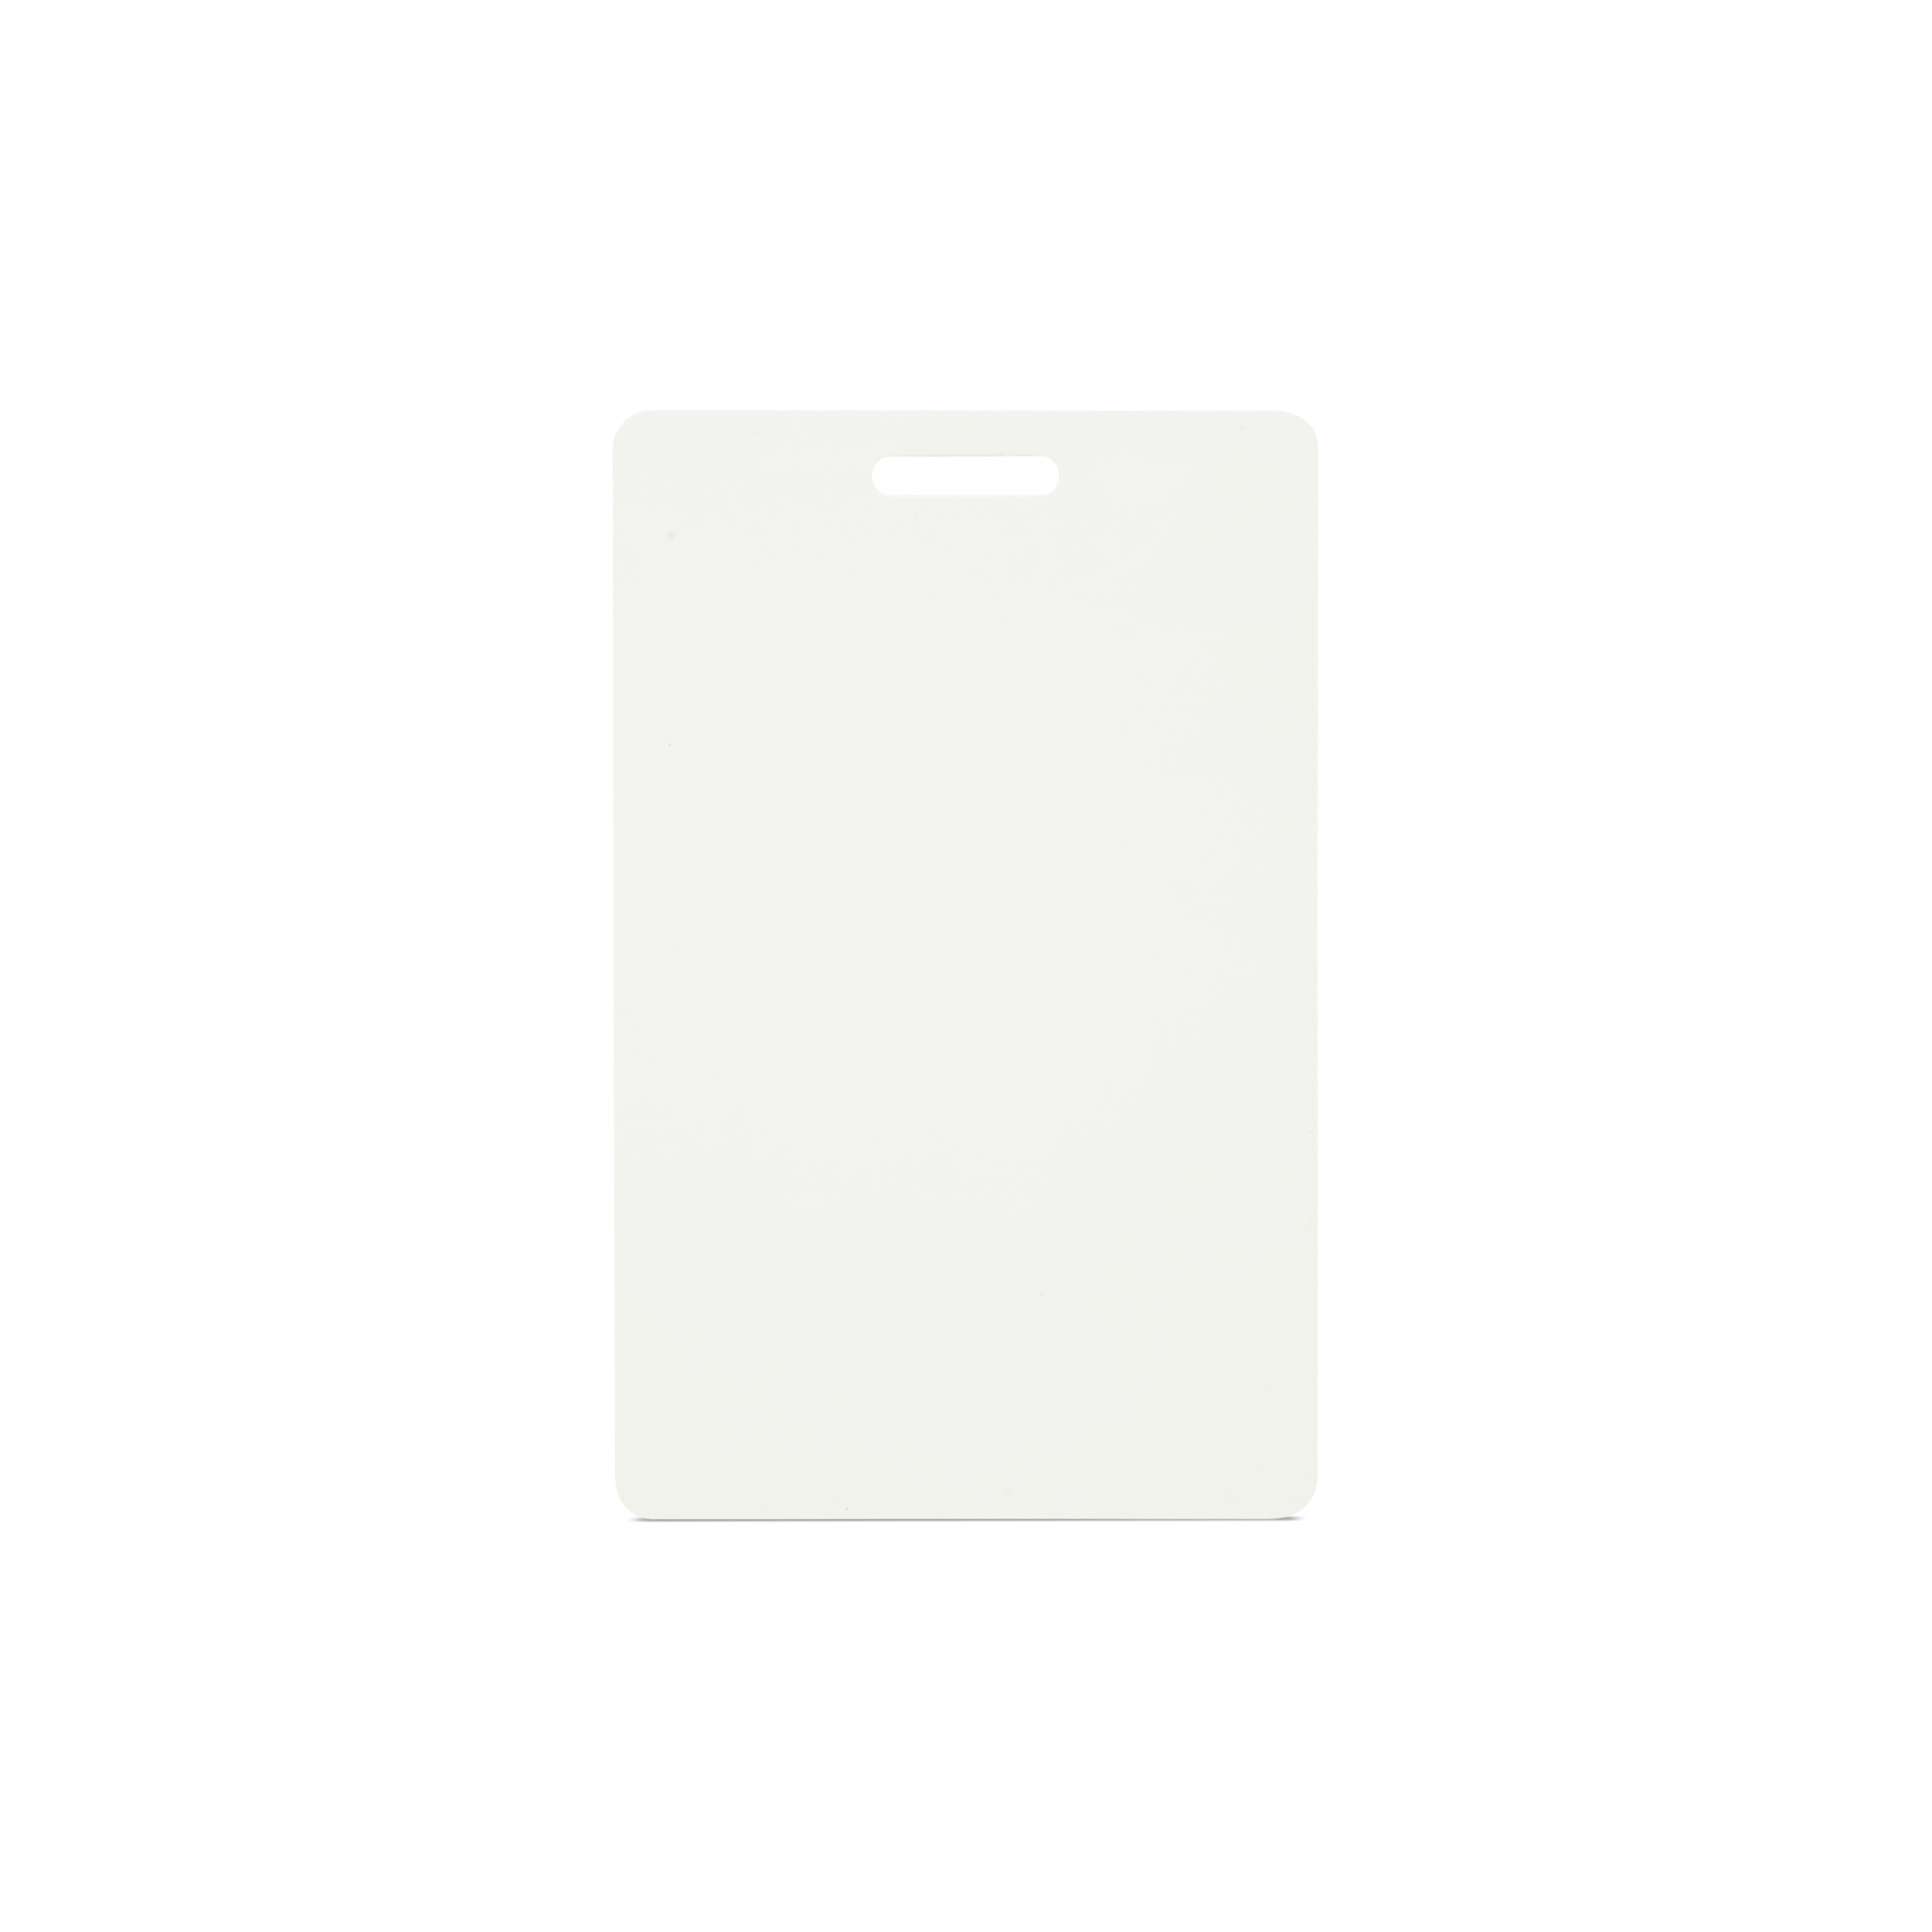 NFC Karte PVC - 85,6 x 54 mm - NTAG216 - 924 Byte - weiß - Hochformat mit Schlitz